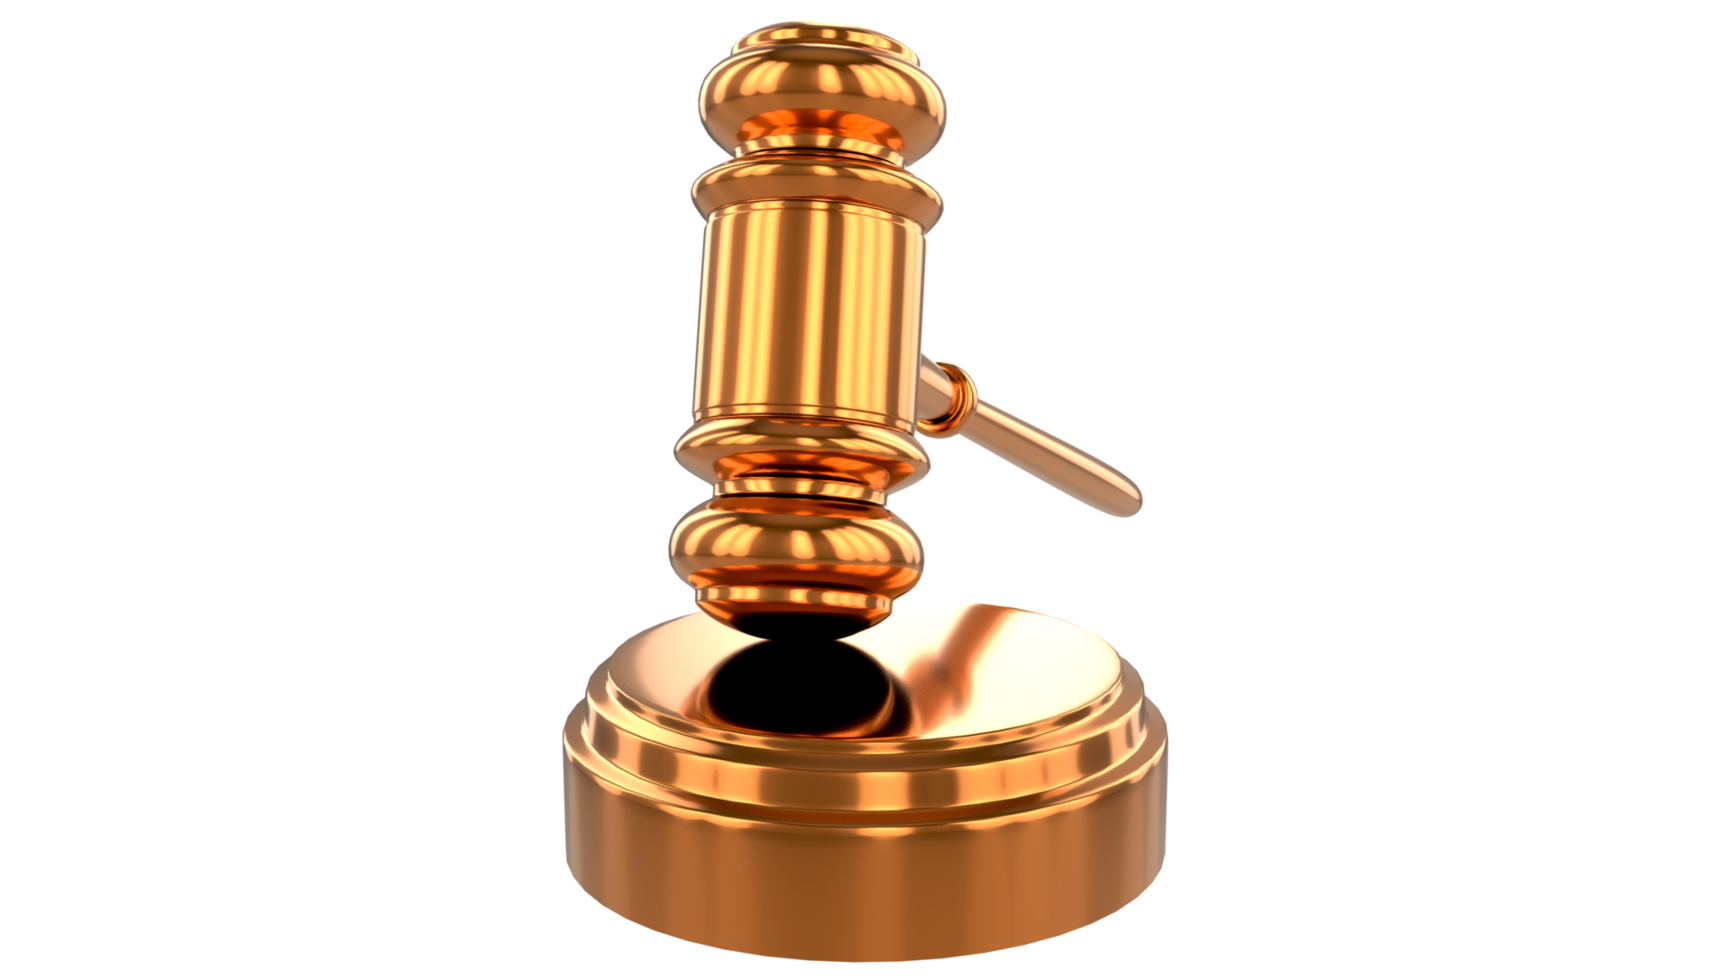 mazo de la ley del martillo del juez. subasta corte martillo licitación autoridad concepto símbolo png fondo transparente